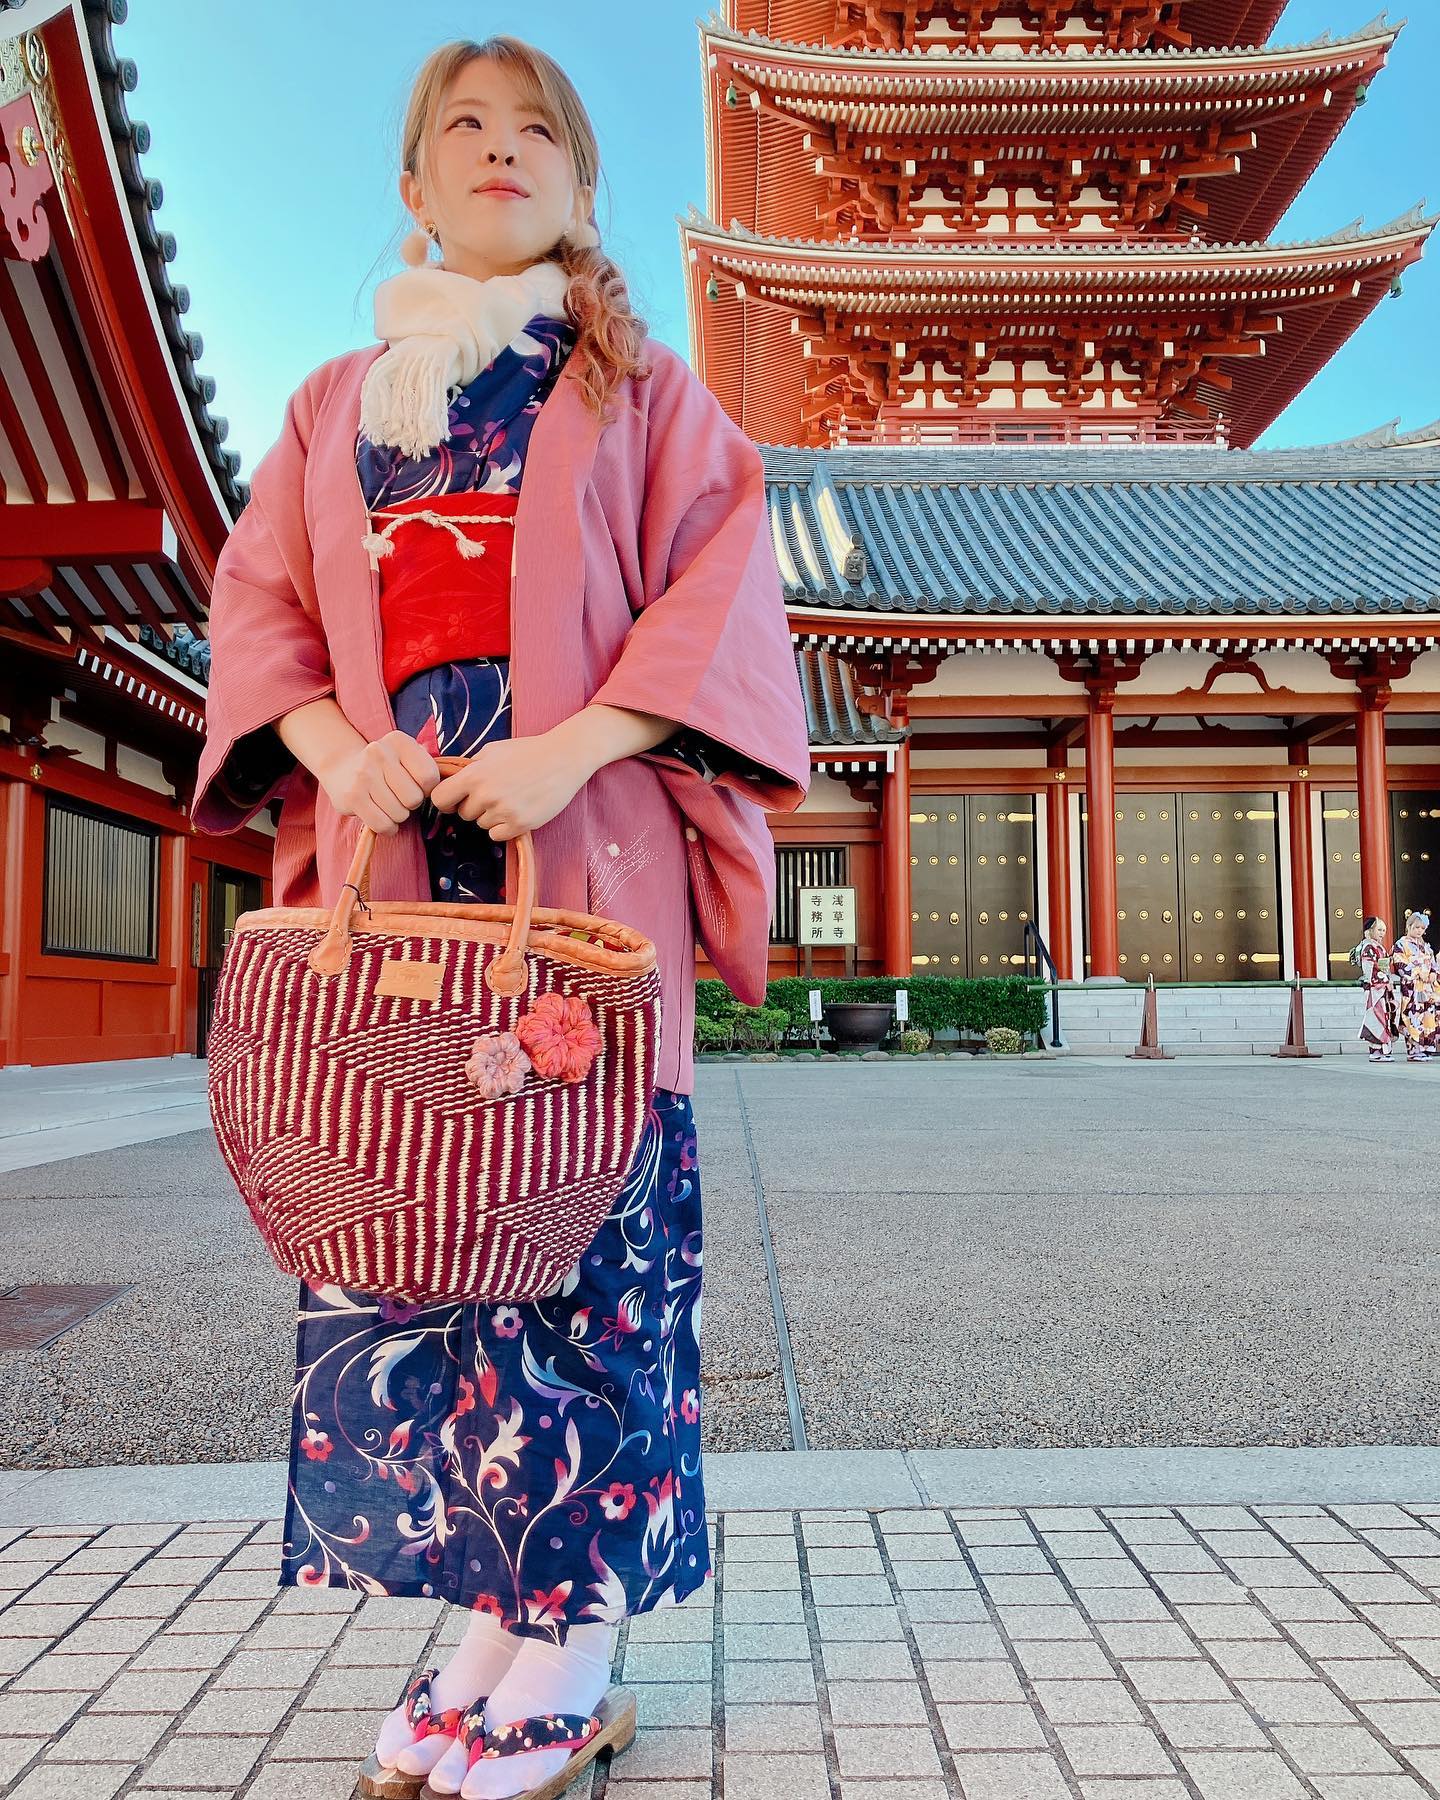 日本 × ケニアの伝統が組み合わさった世界に一つのバッグ!page-visual 日本 × ケニアの伝統が組み合わさった世界に一つのバッグ!ビジュアル